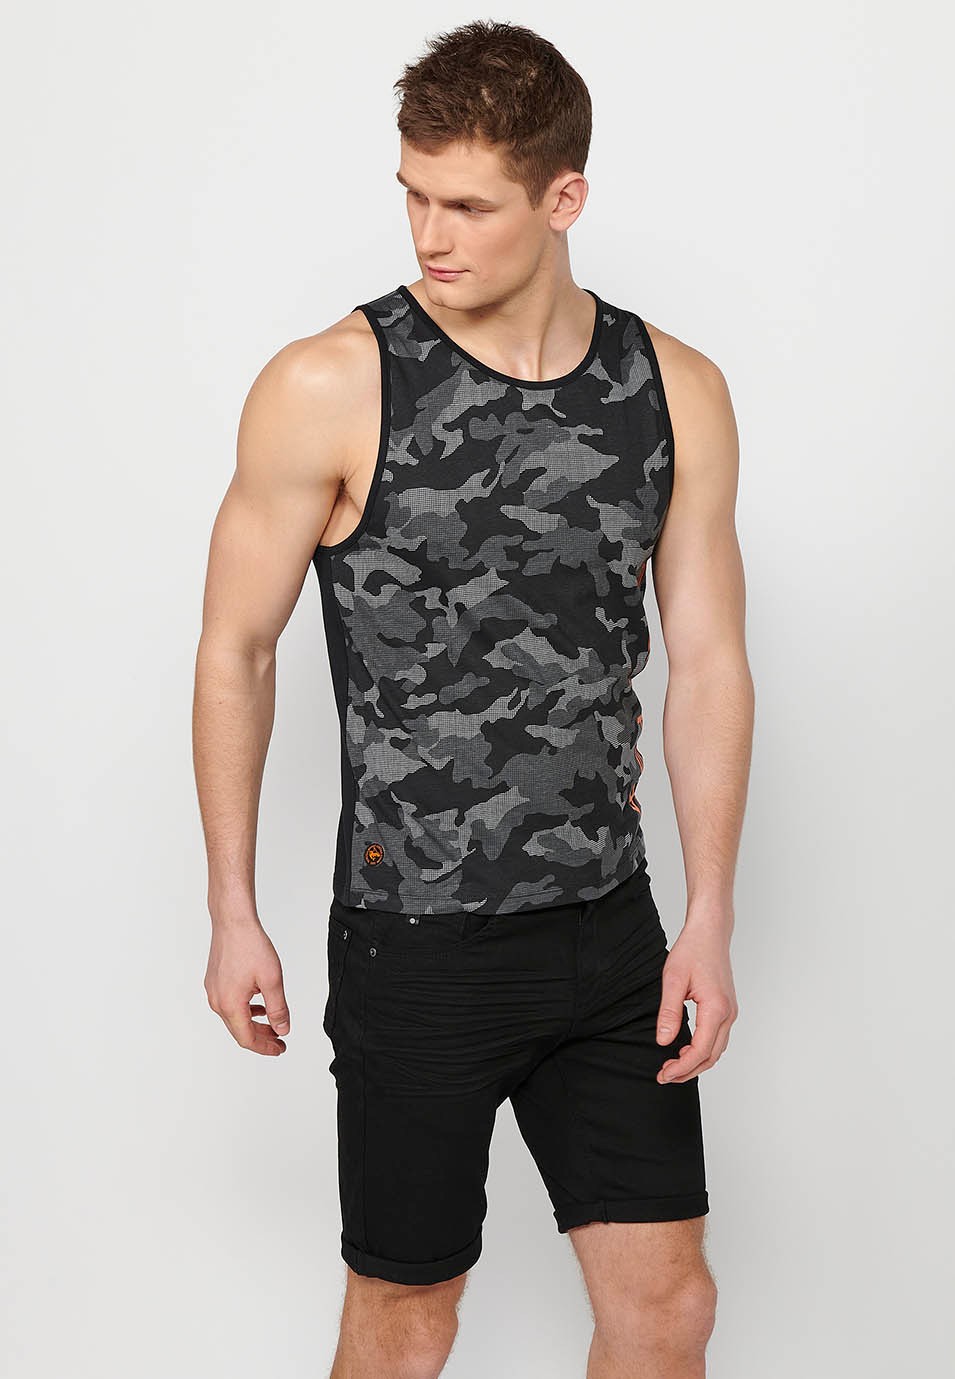 Camiseta de tirantes, estampado camuflaje color negro y gris para hombre